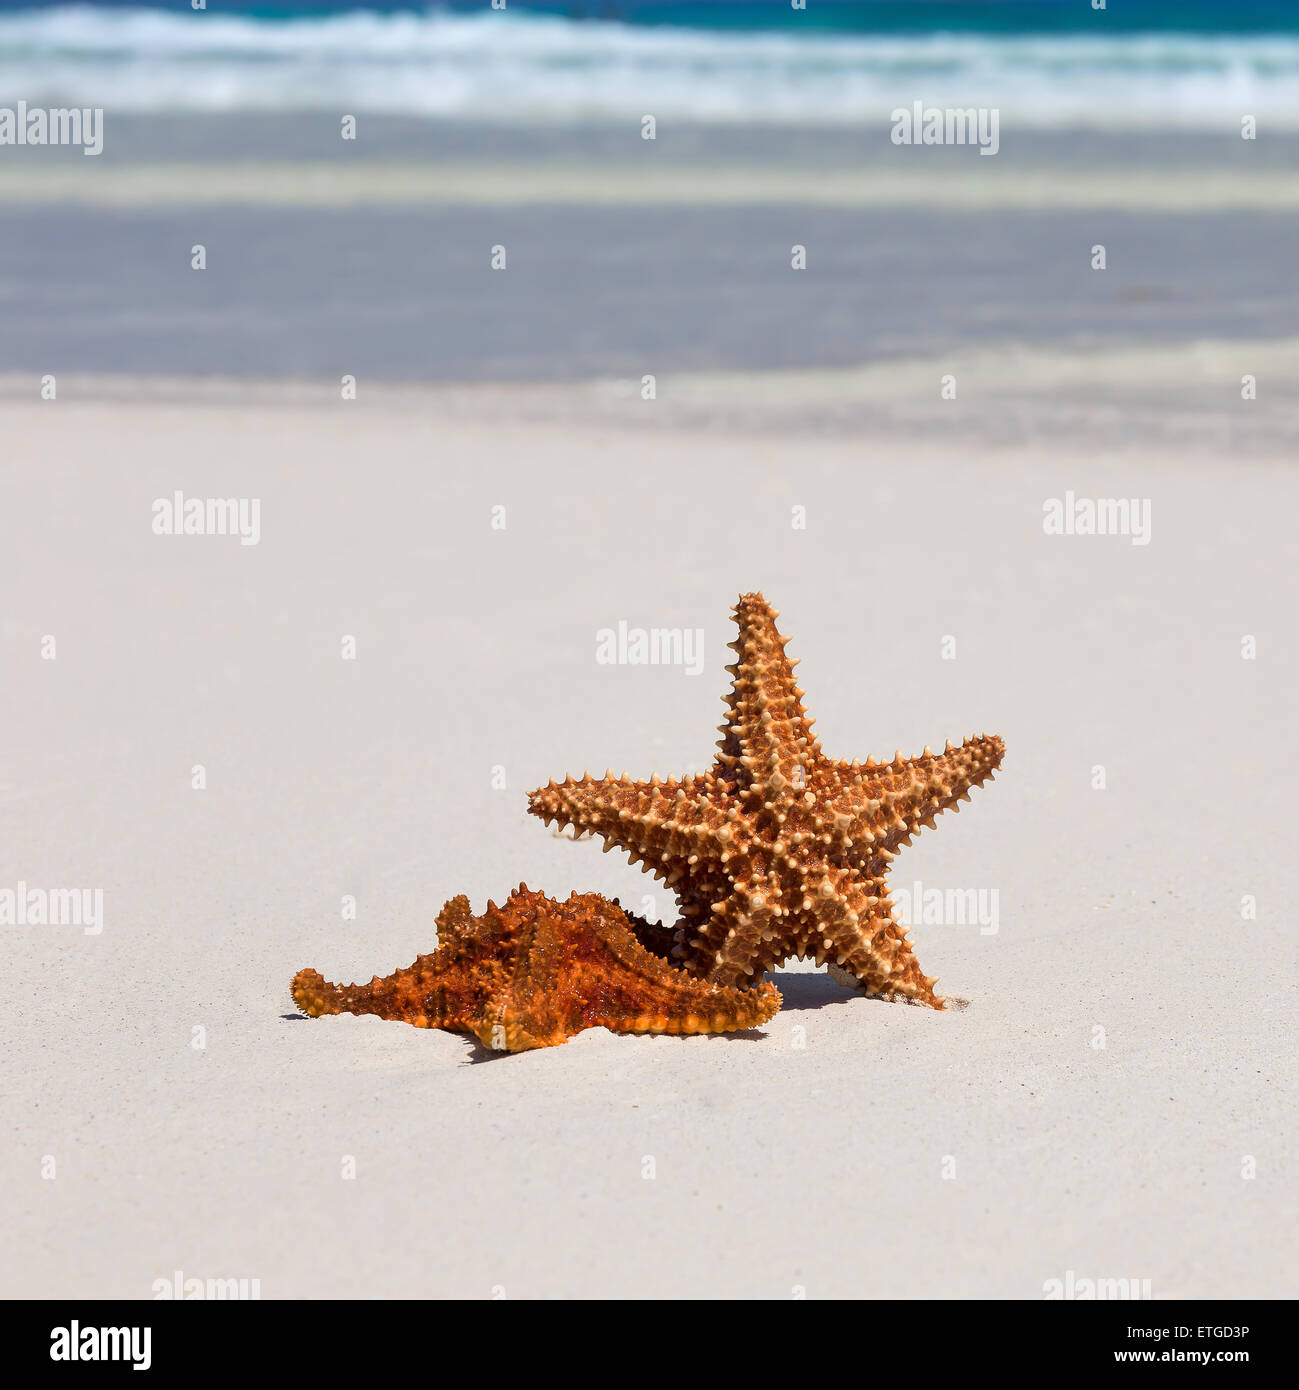 Starfishes sui Caraibi spiaggia sabbiosa, il concetto di viaggio Foto Stock